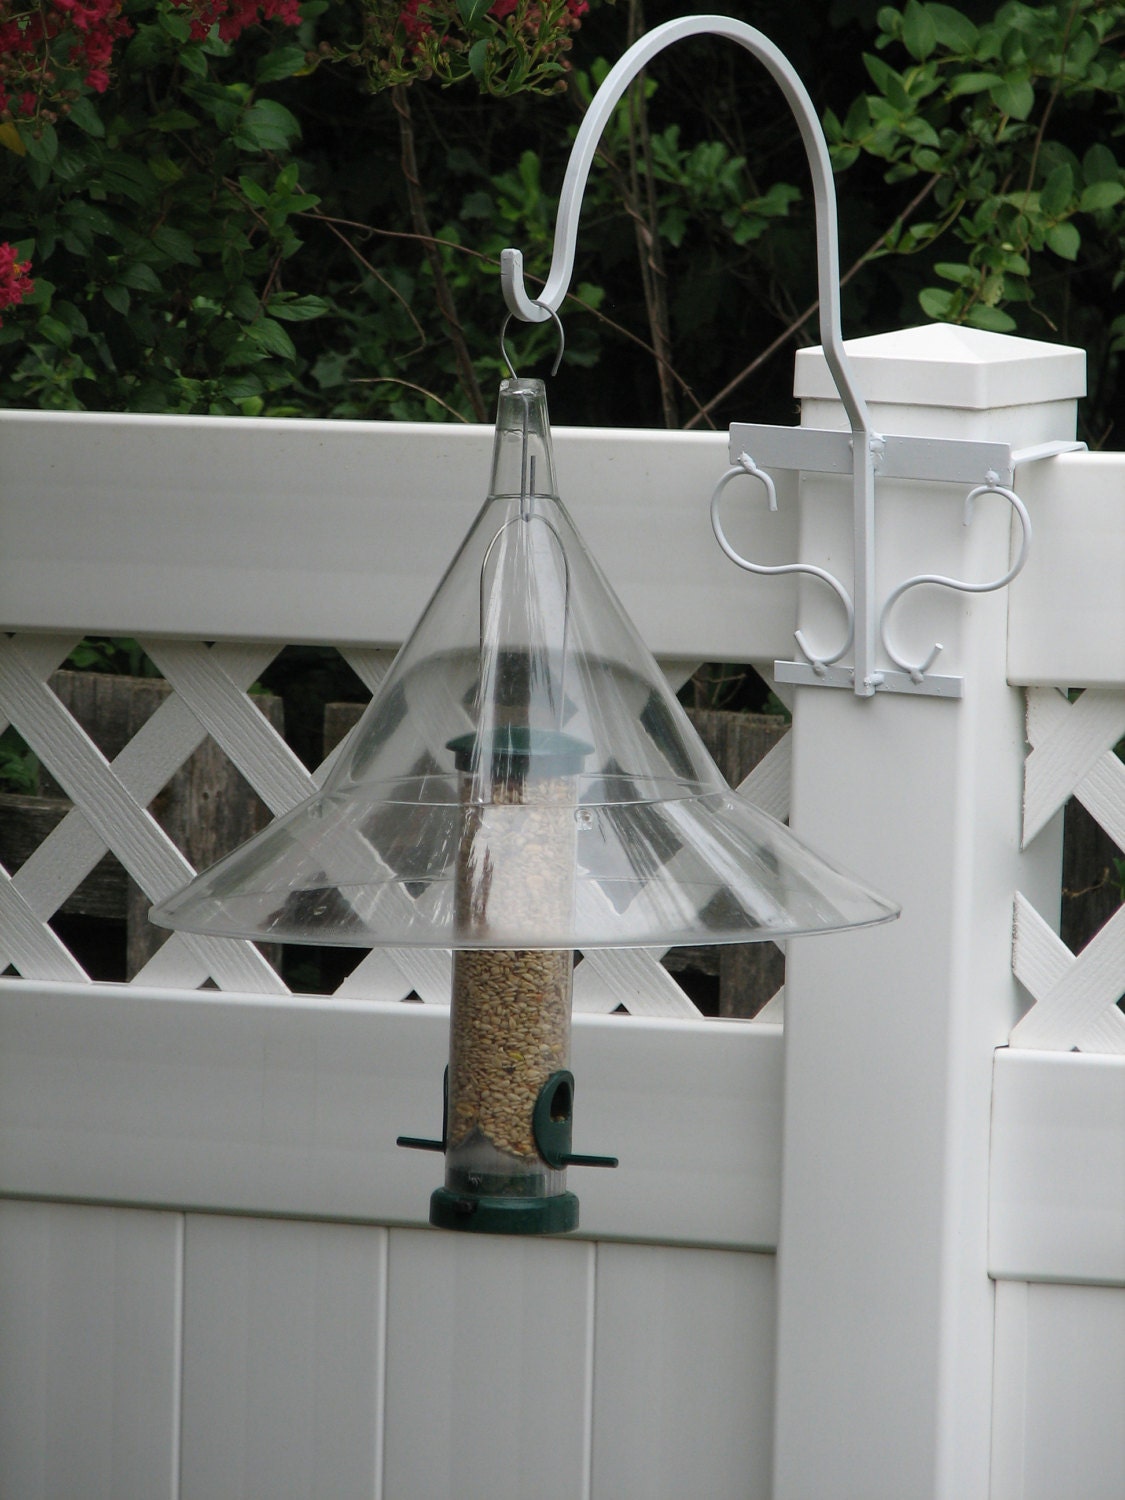 4in deck rail bird feeder hangers